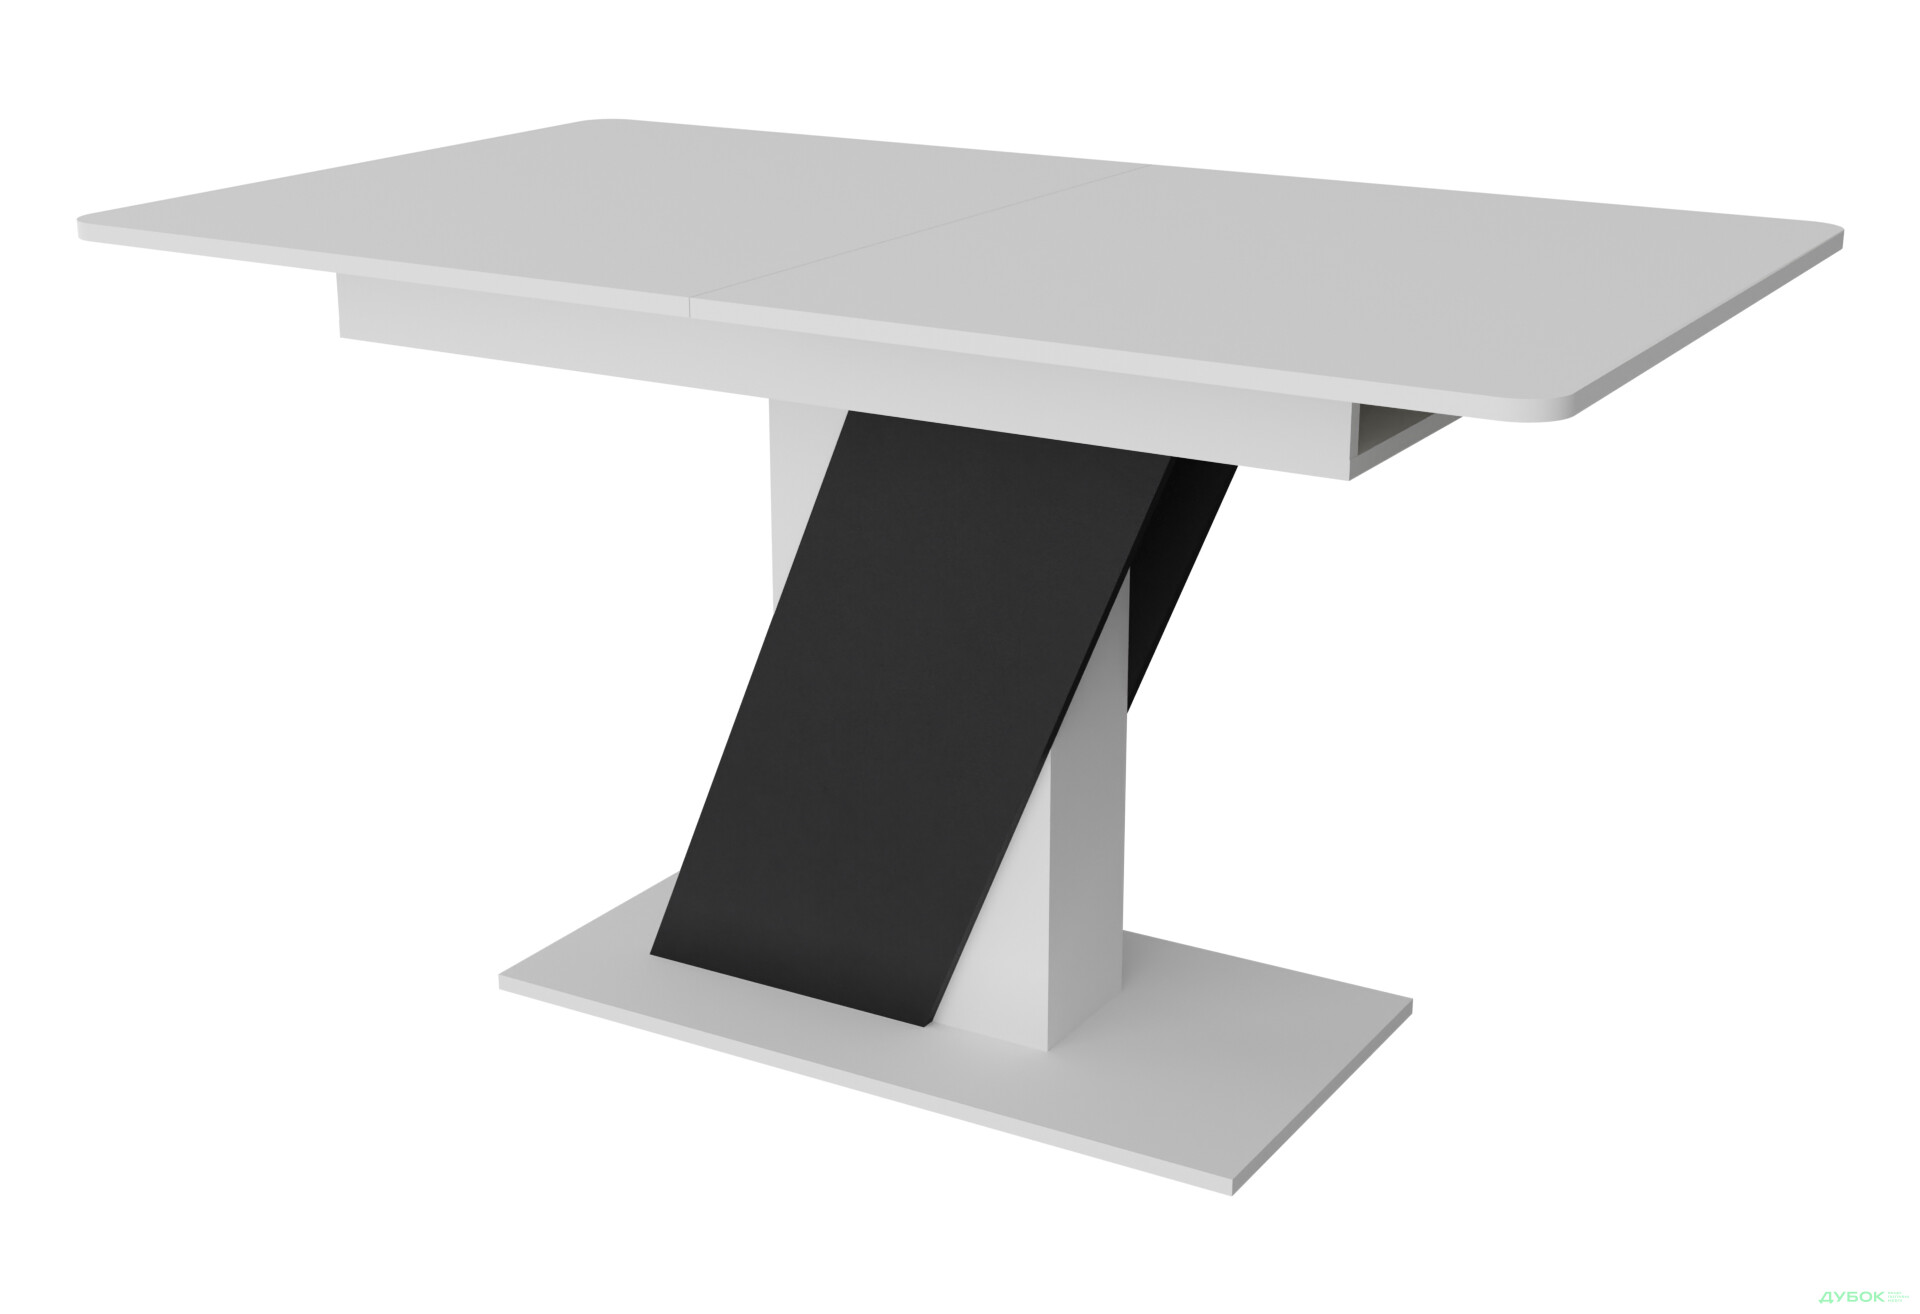 Фото 1 - Стол обеденный Неман Теч 140x80 см раскладной, белый / графит